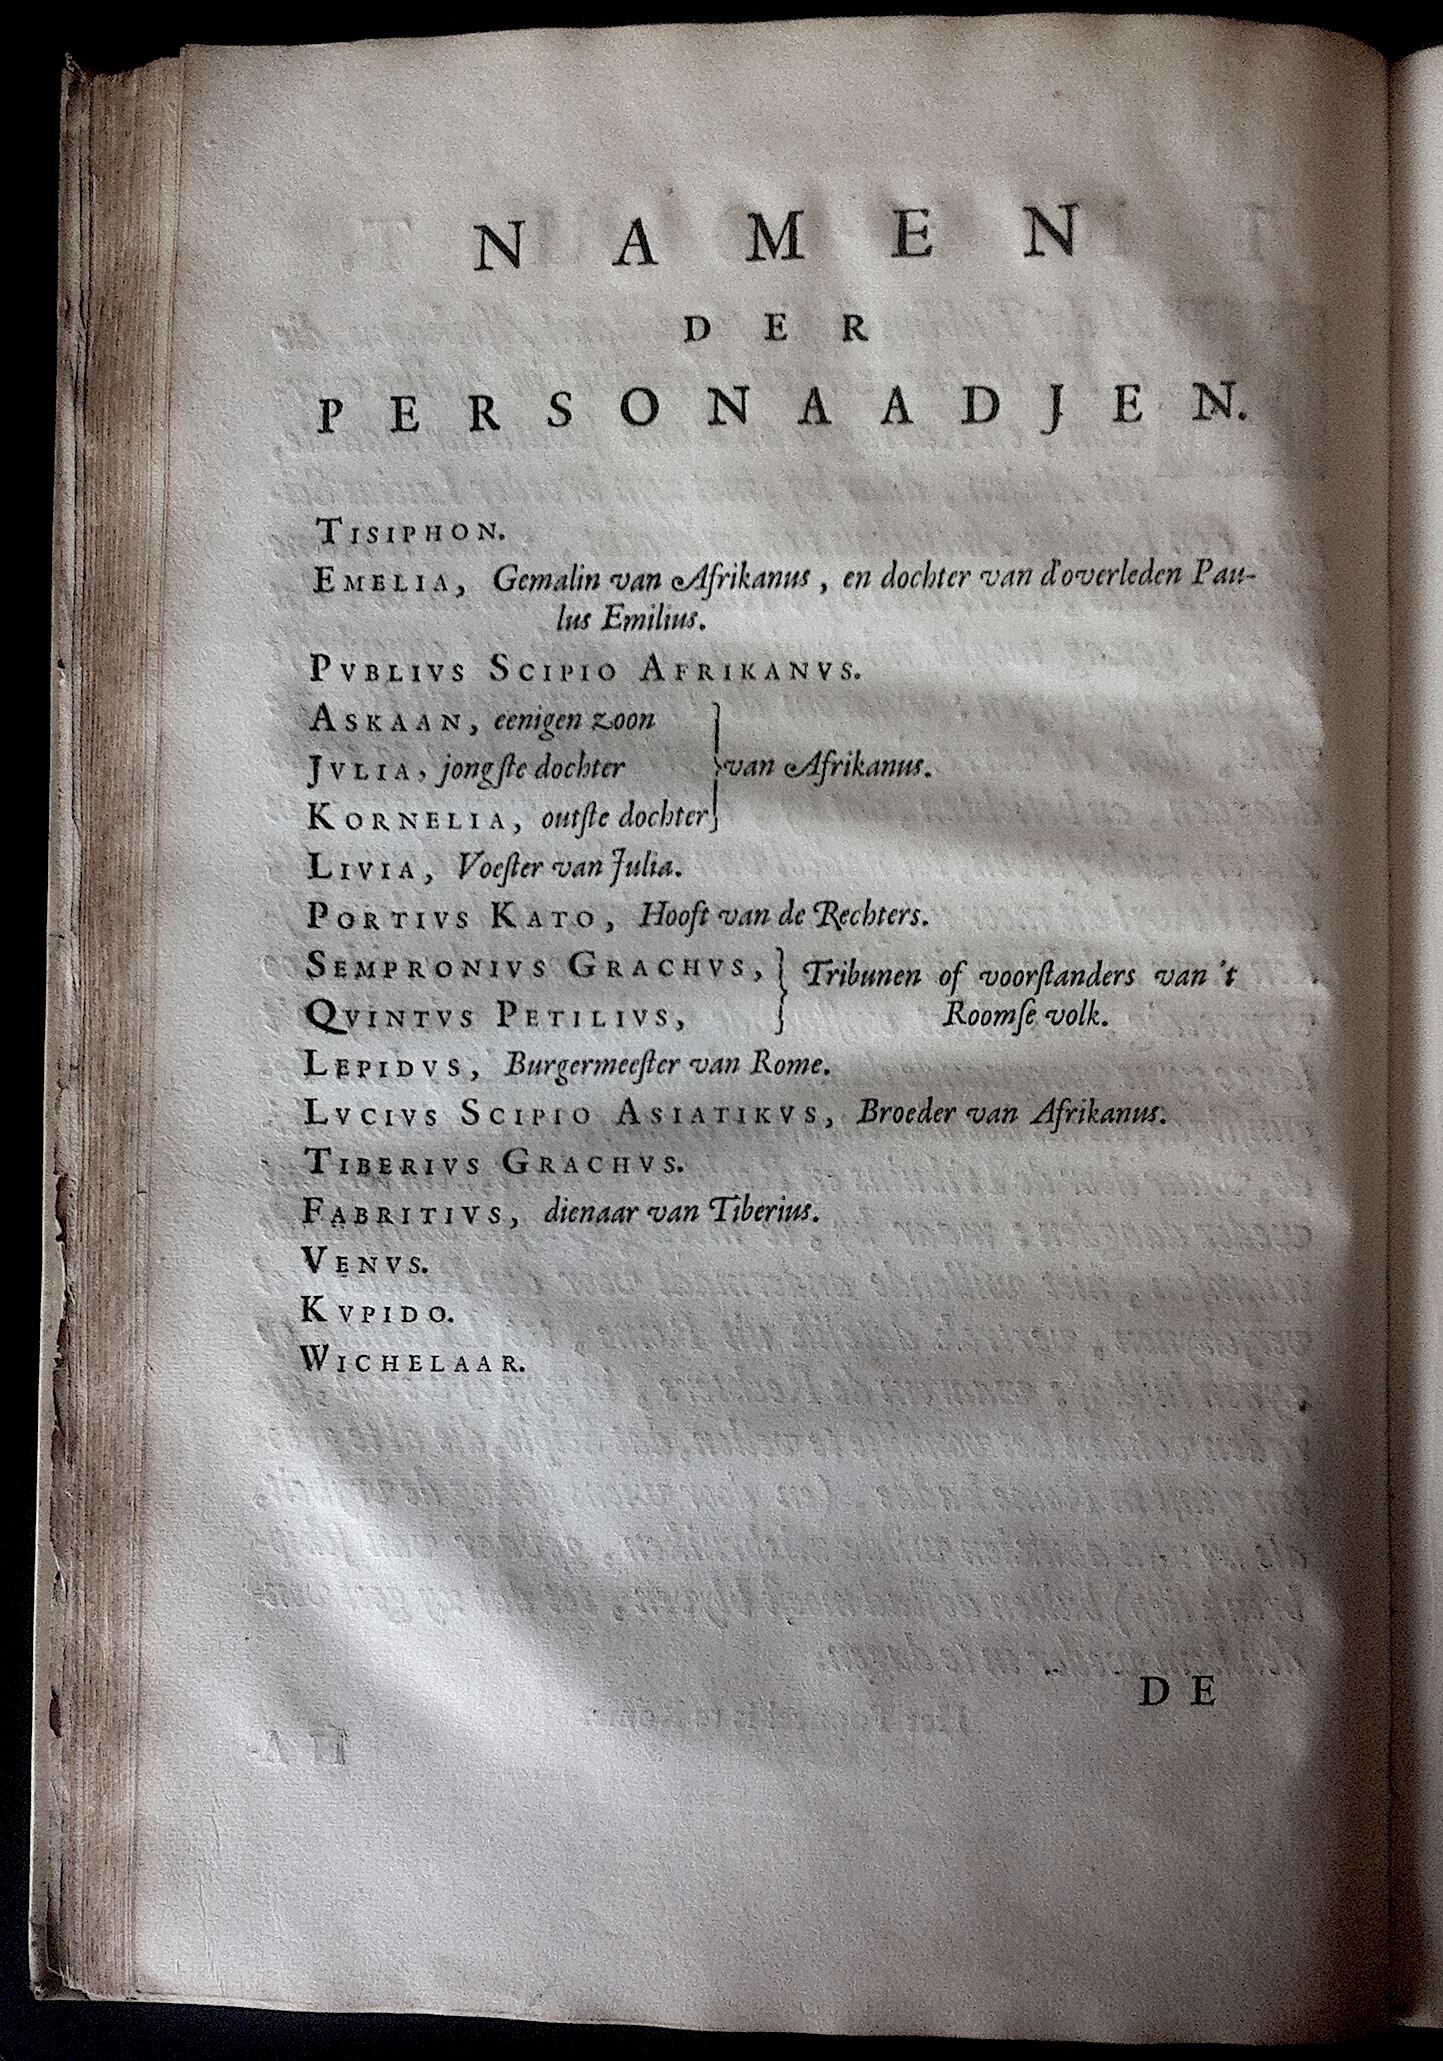 BoccardScipioFolio1658a04